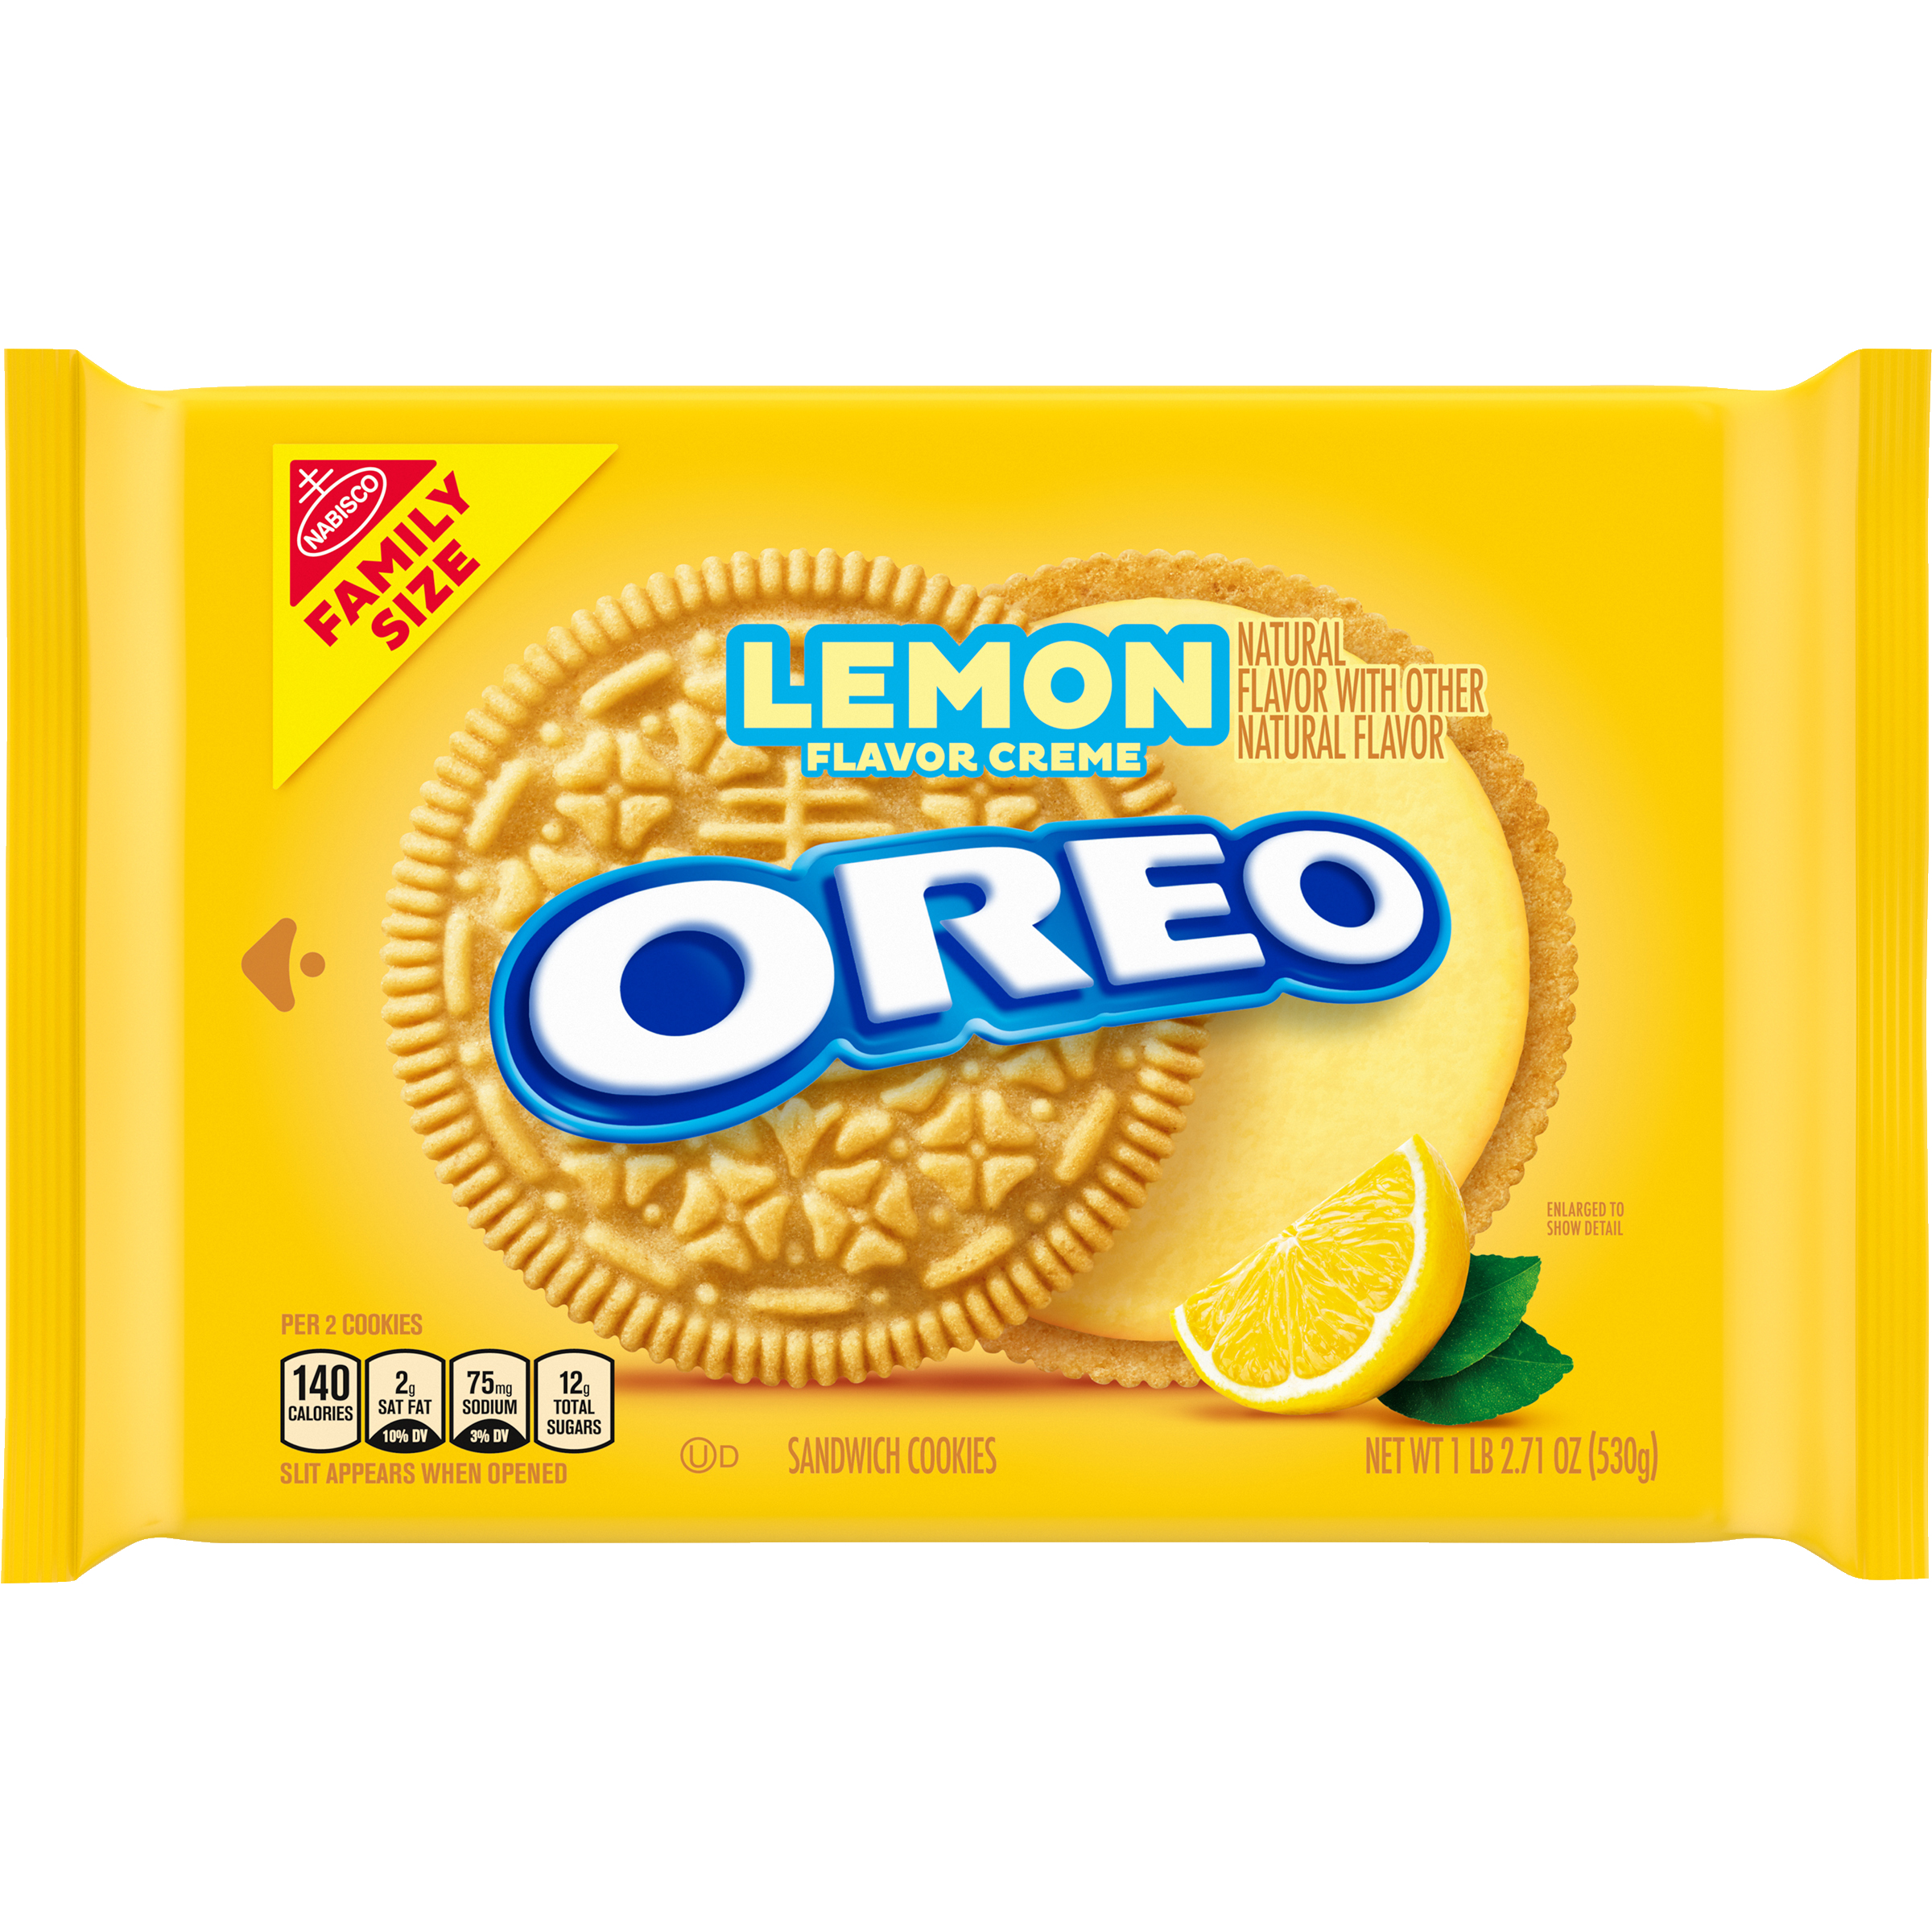 OREO Lemon Creme Sandwich Cookies, Family Size, 18.71 oz-1